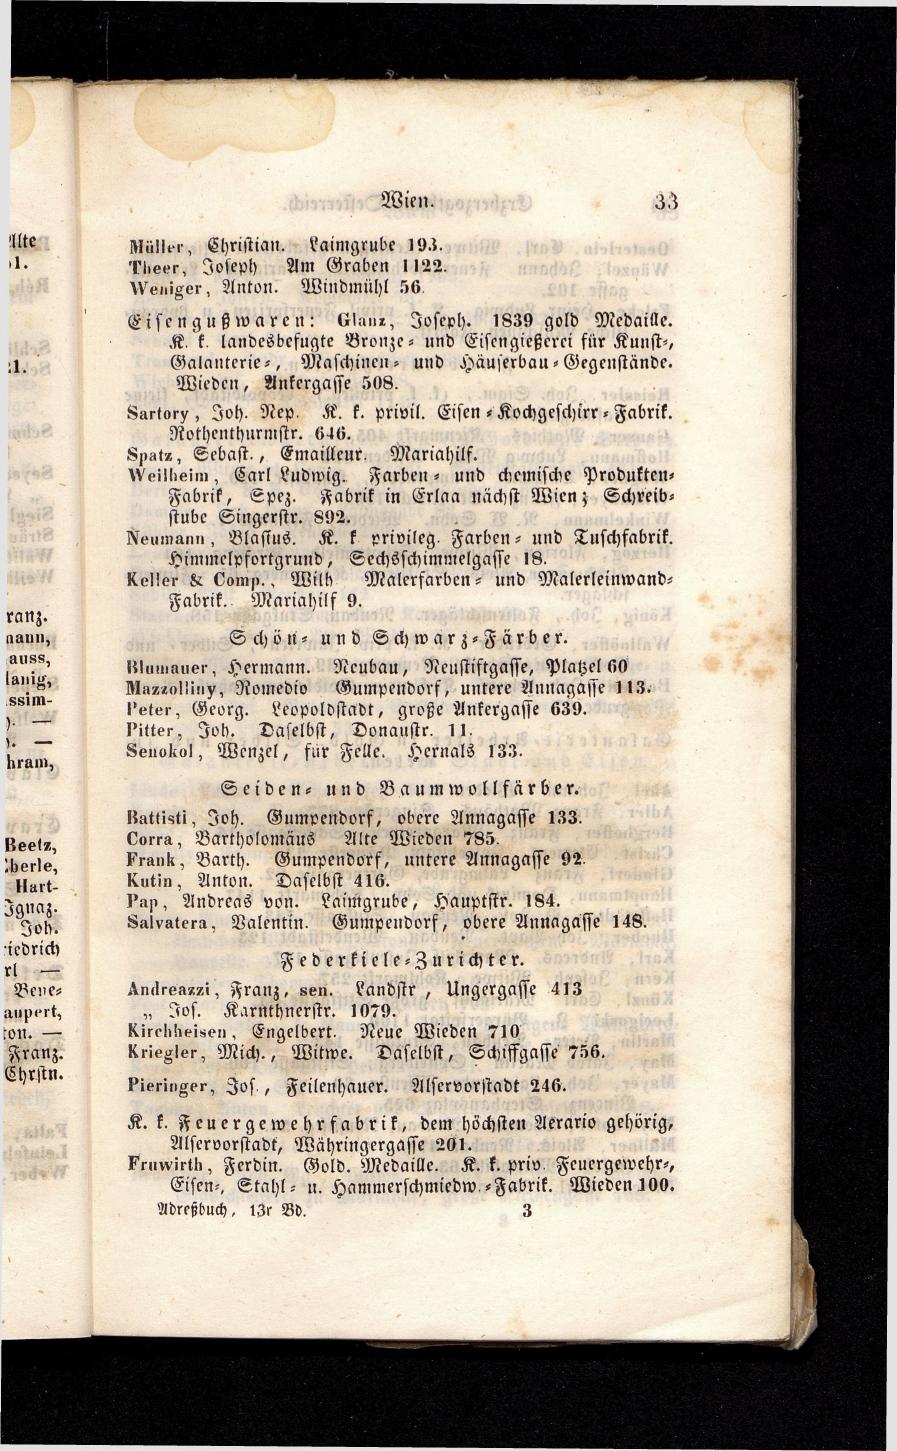 Grosses Adressbuch der Kaufleute. No. 13. Oesterreich ober u. unter der Enns 1844 - Seite 37